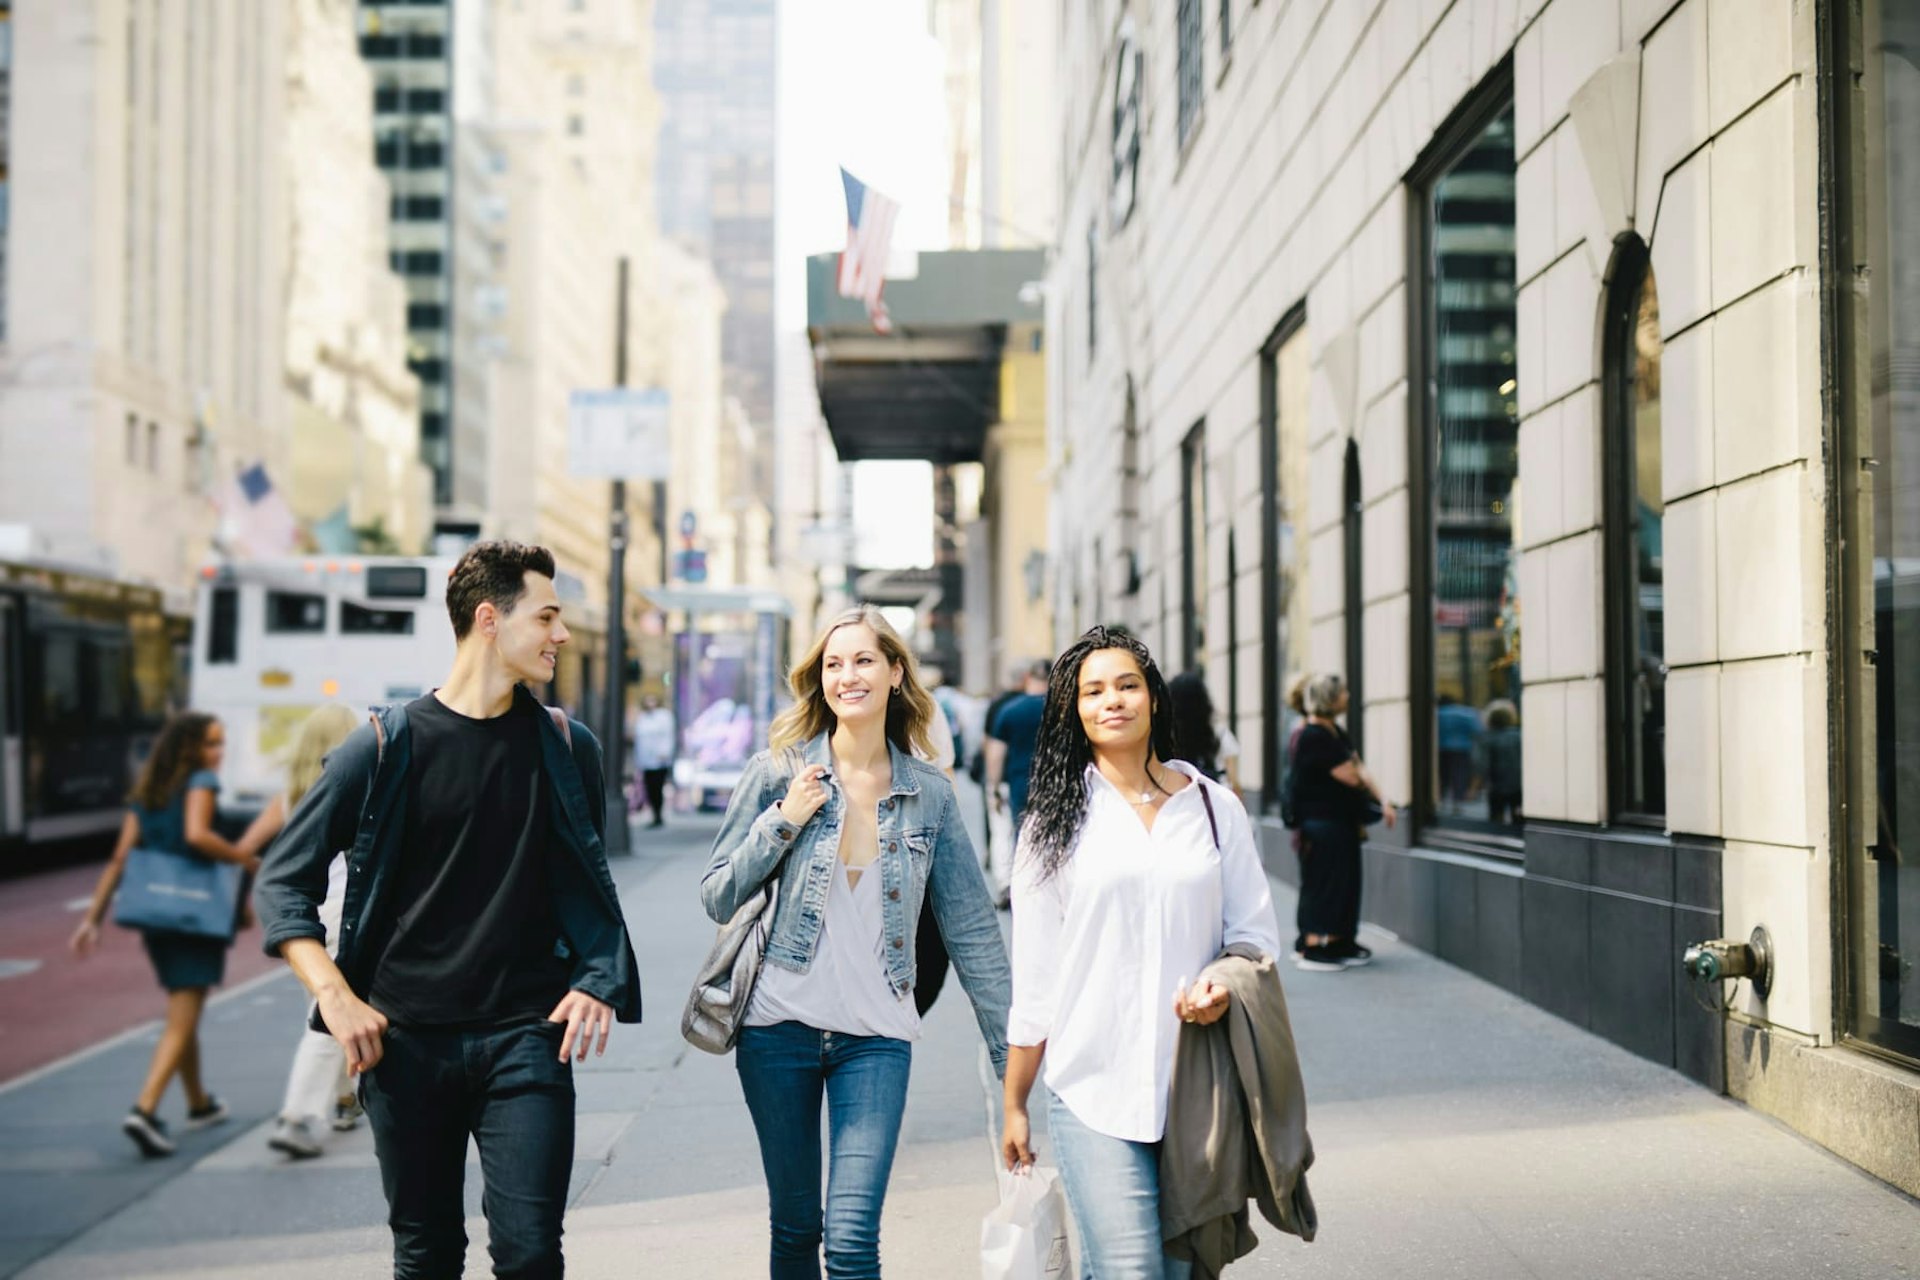 Group of people walking down sidewalk, NYC